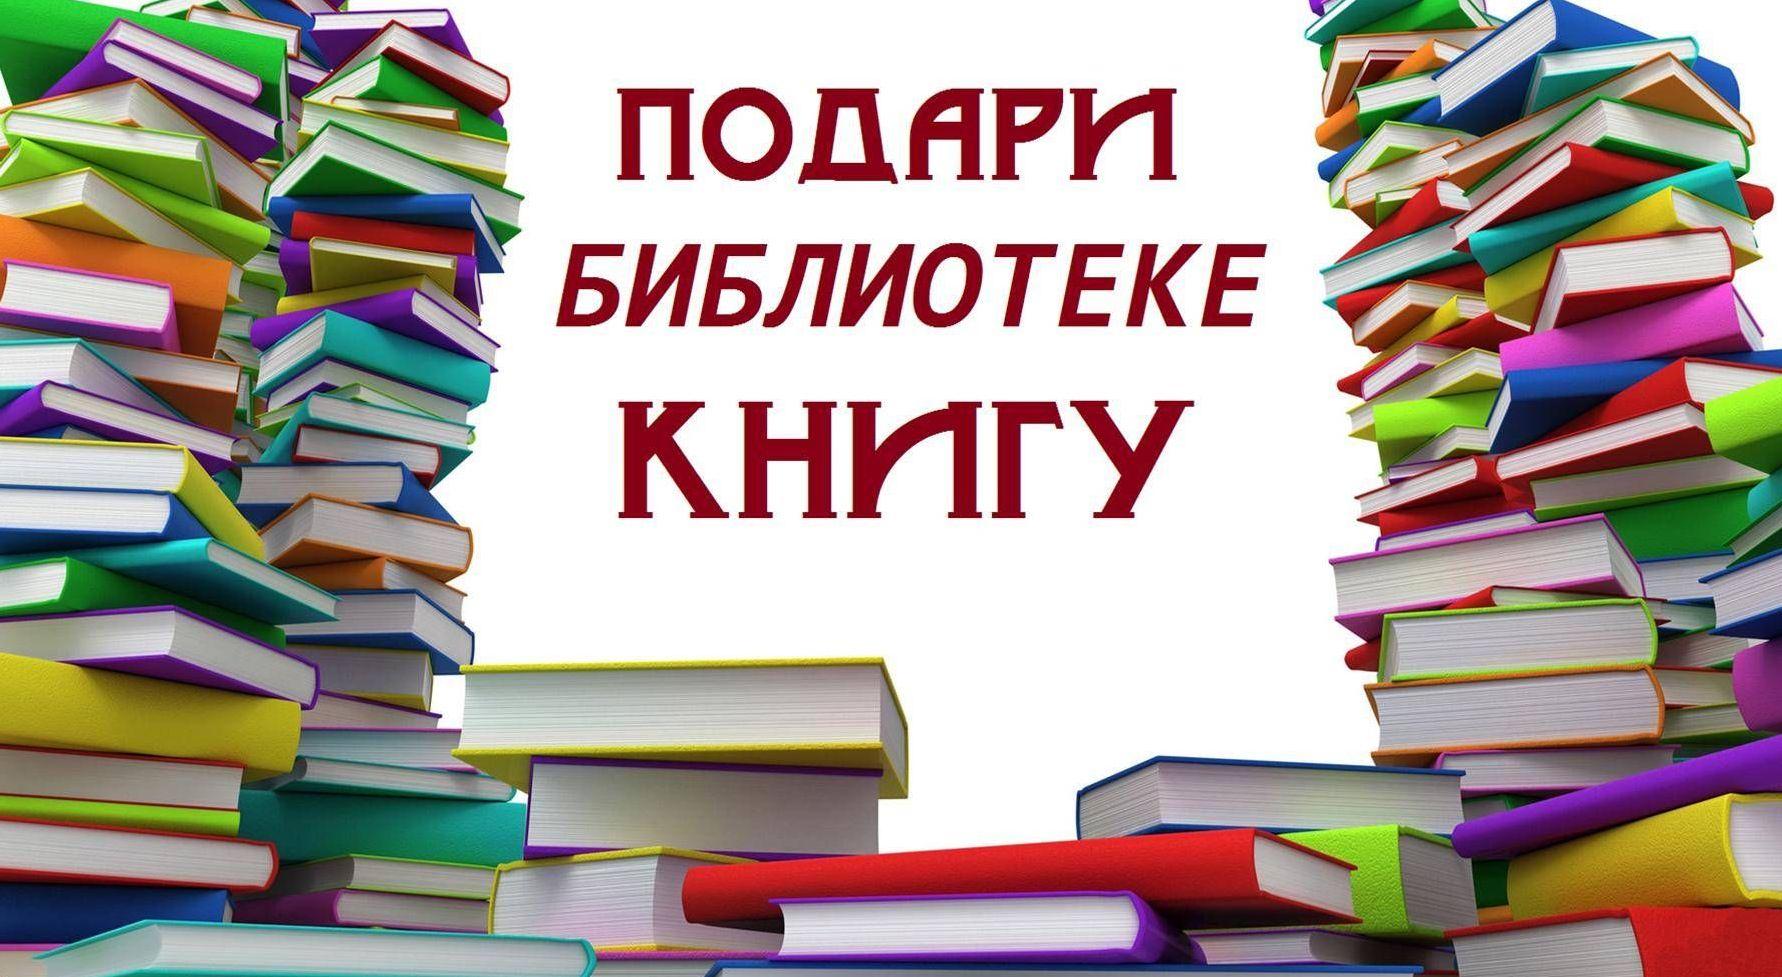 Представительство фонда &quot;Земляки&quot; призывает к участию в акции по сбору книг для библиотек.